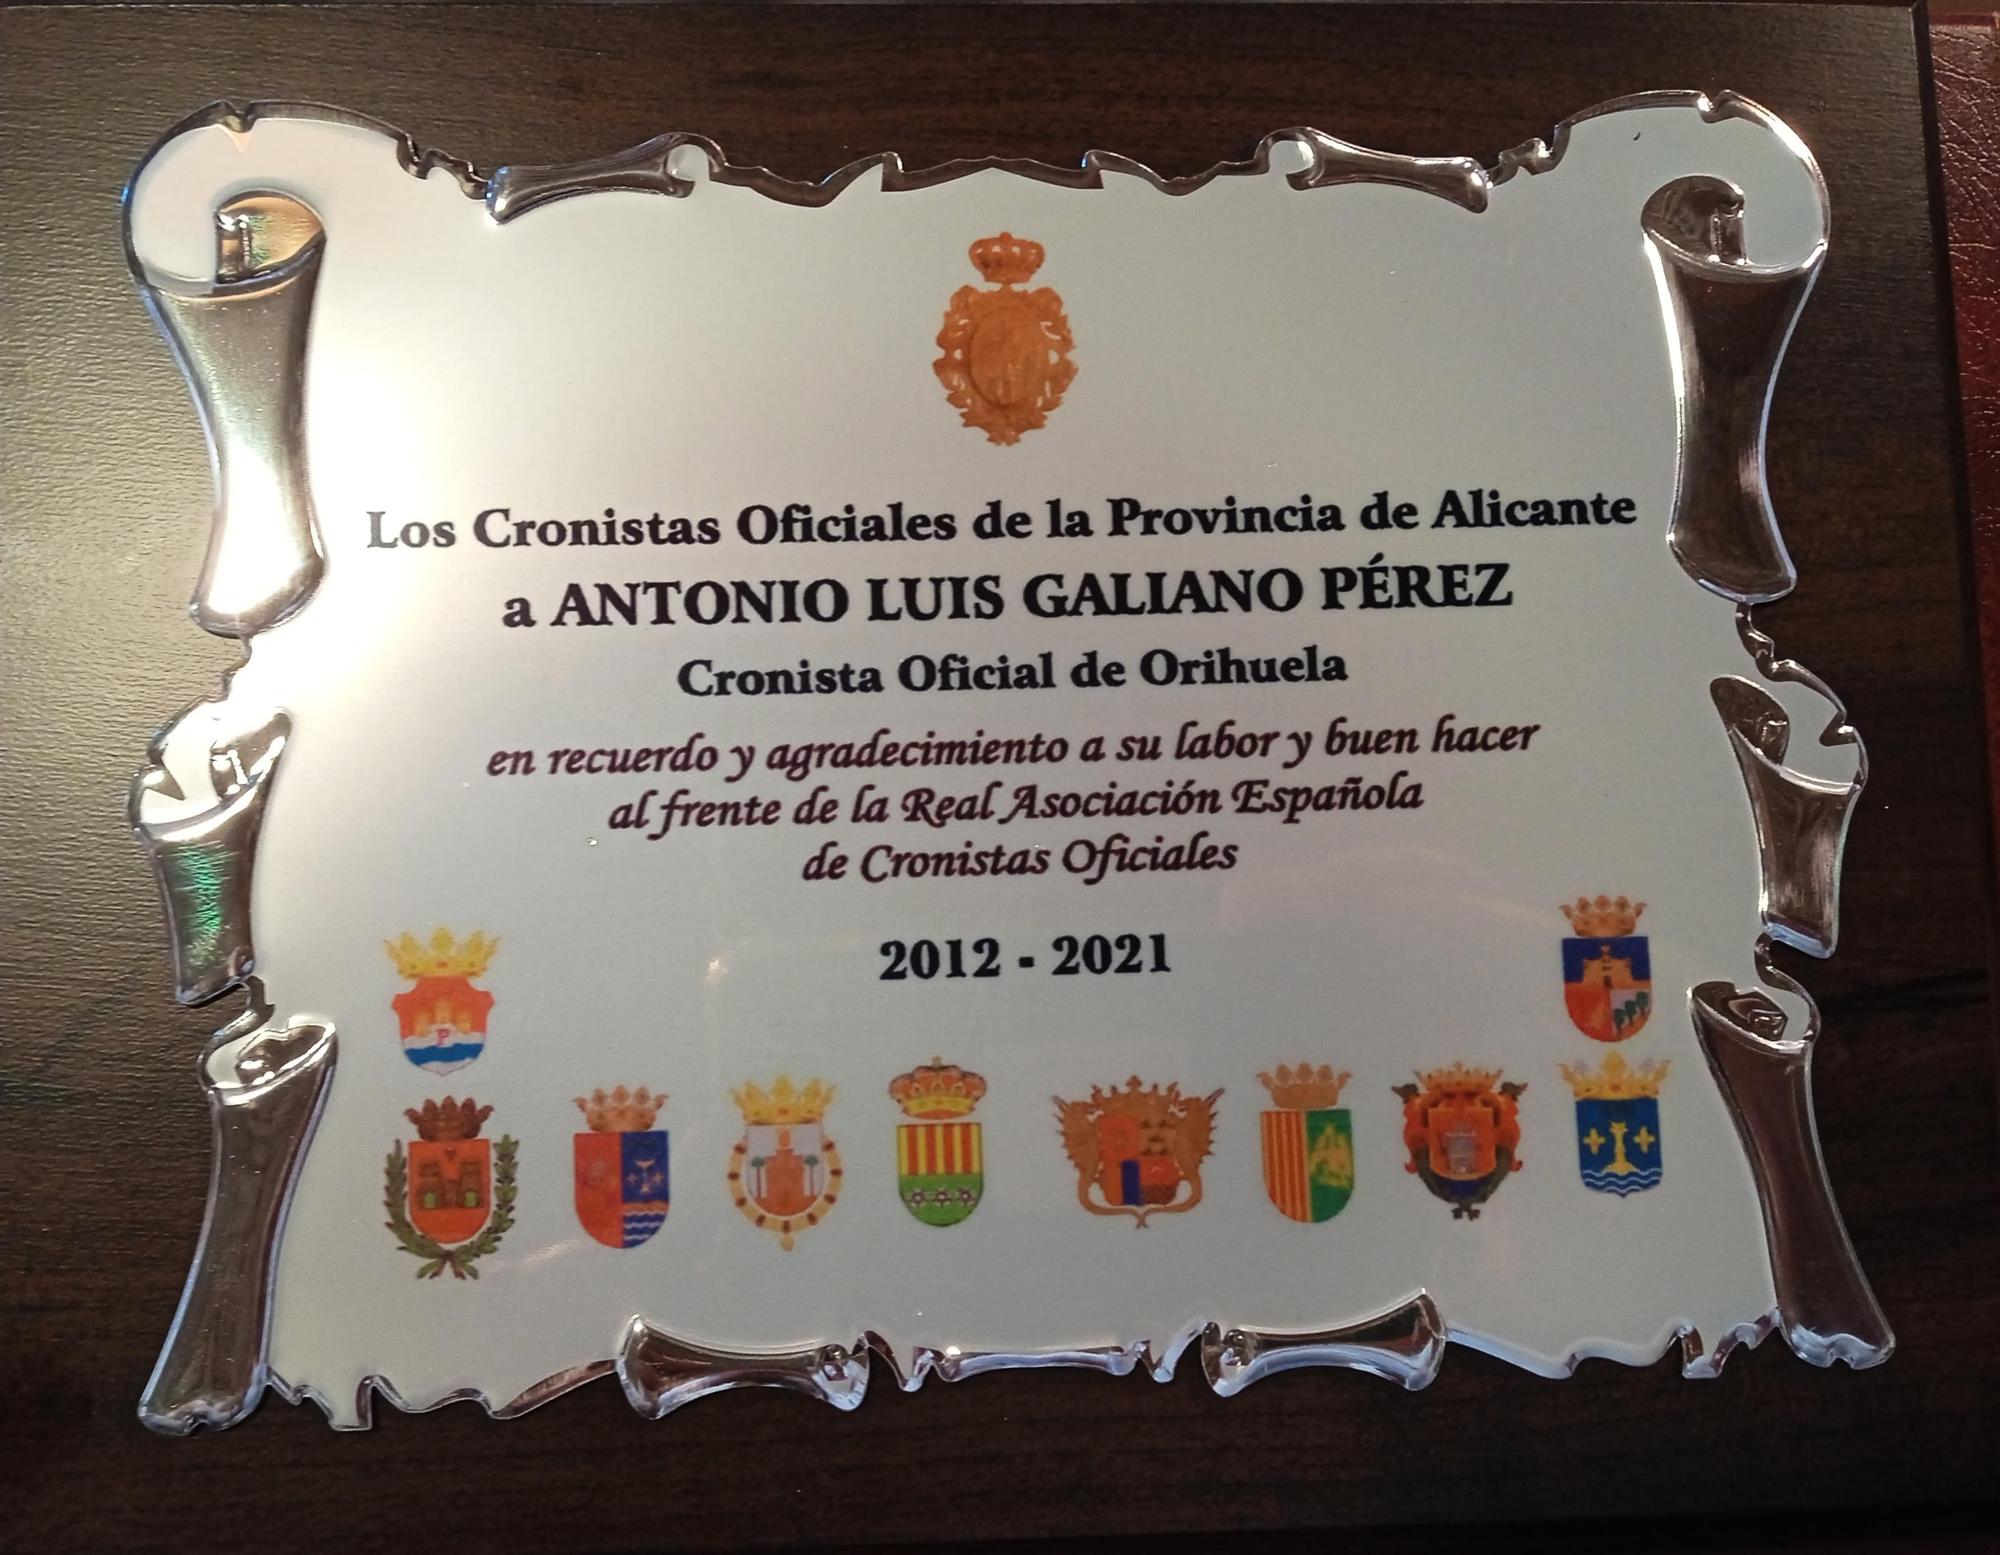 La placa de homenaje a Antonio Luis Galiano Pérez.